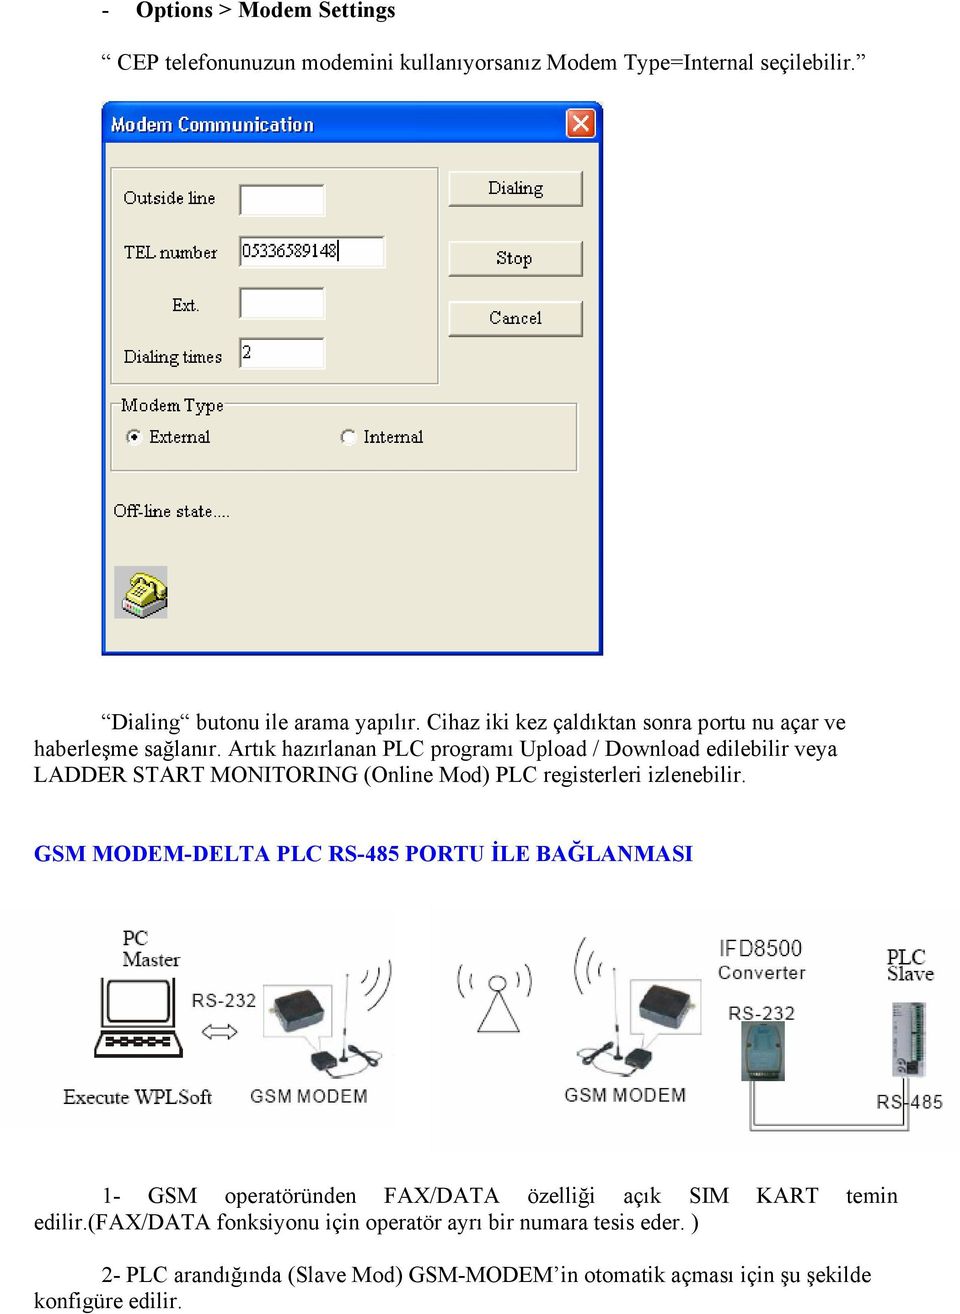 Artık hazırlanan PLC programı Upload / Download edilebilir veya LADDER START MONITORING (Online Mod) PLC registerleri izlenebilir.